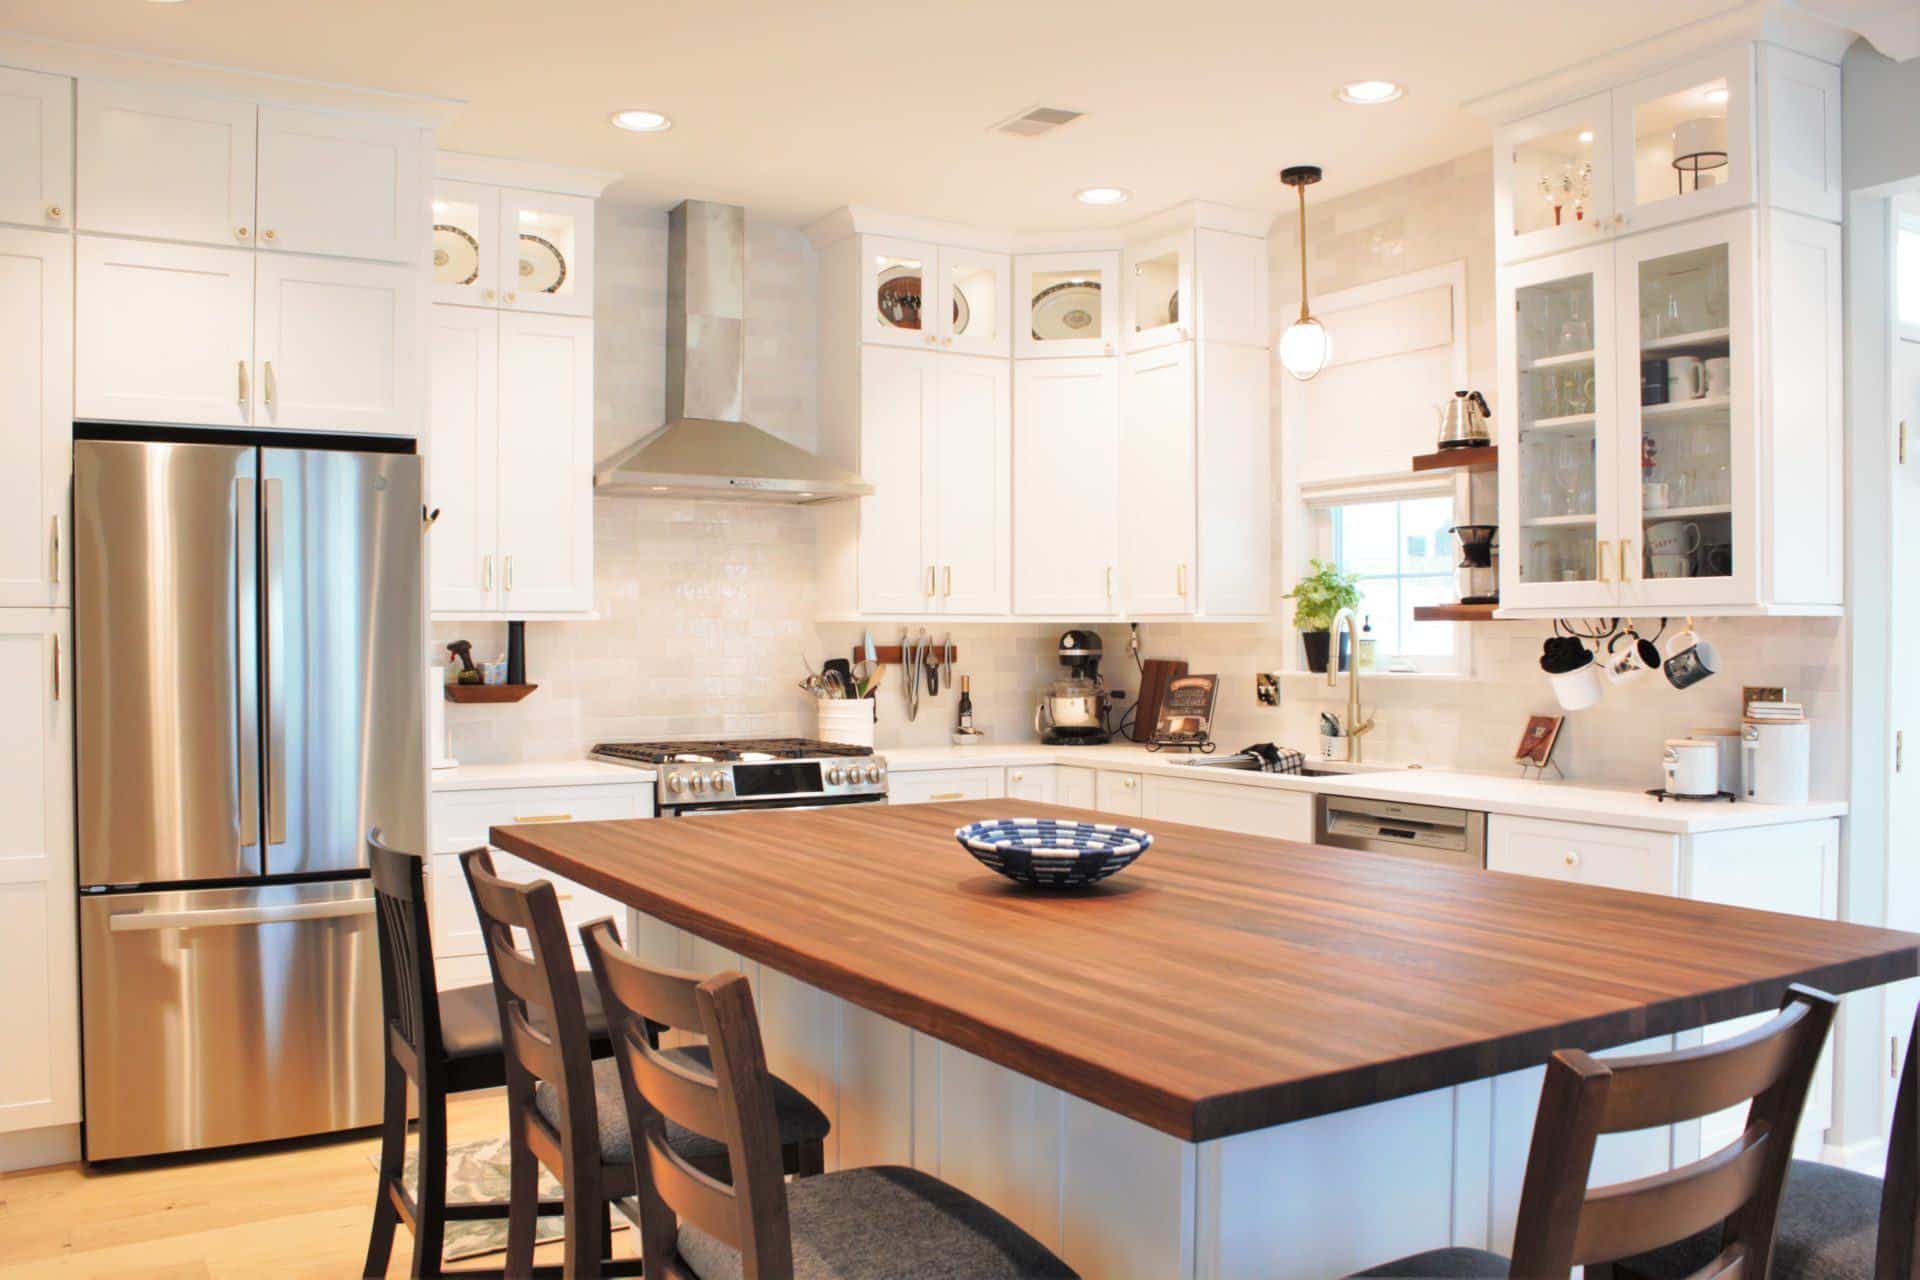 White Kitchen Cabinet Hardware Ideas - Kountry Kraft